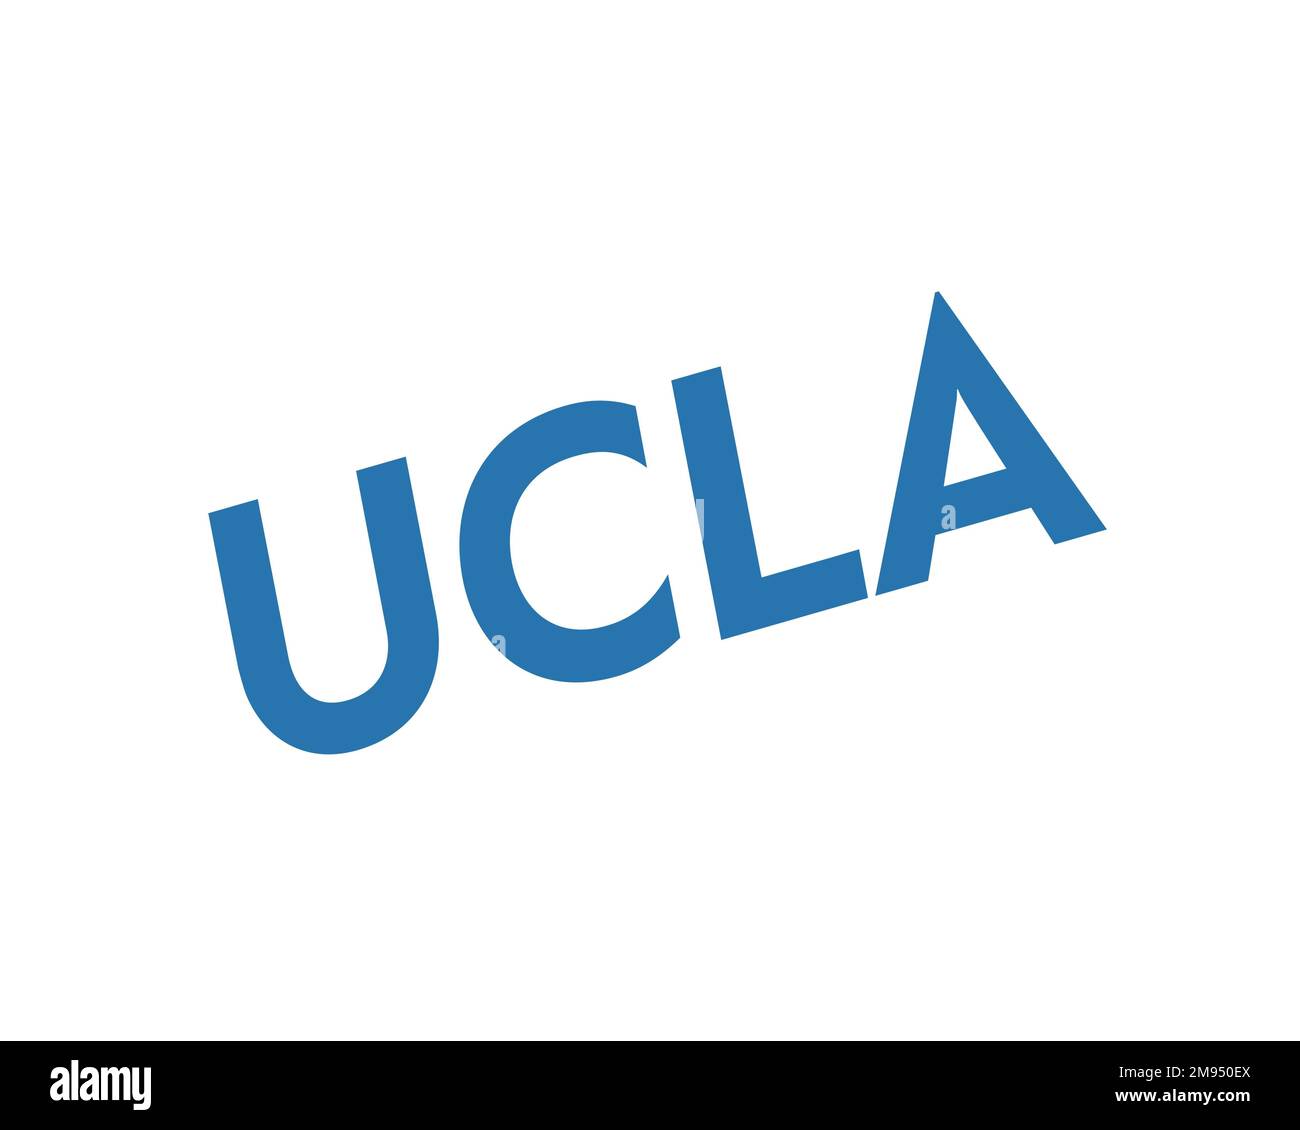 University of California Los Angeles, logo pivoté, fond blanc Banque D'Images